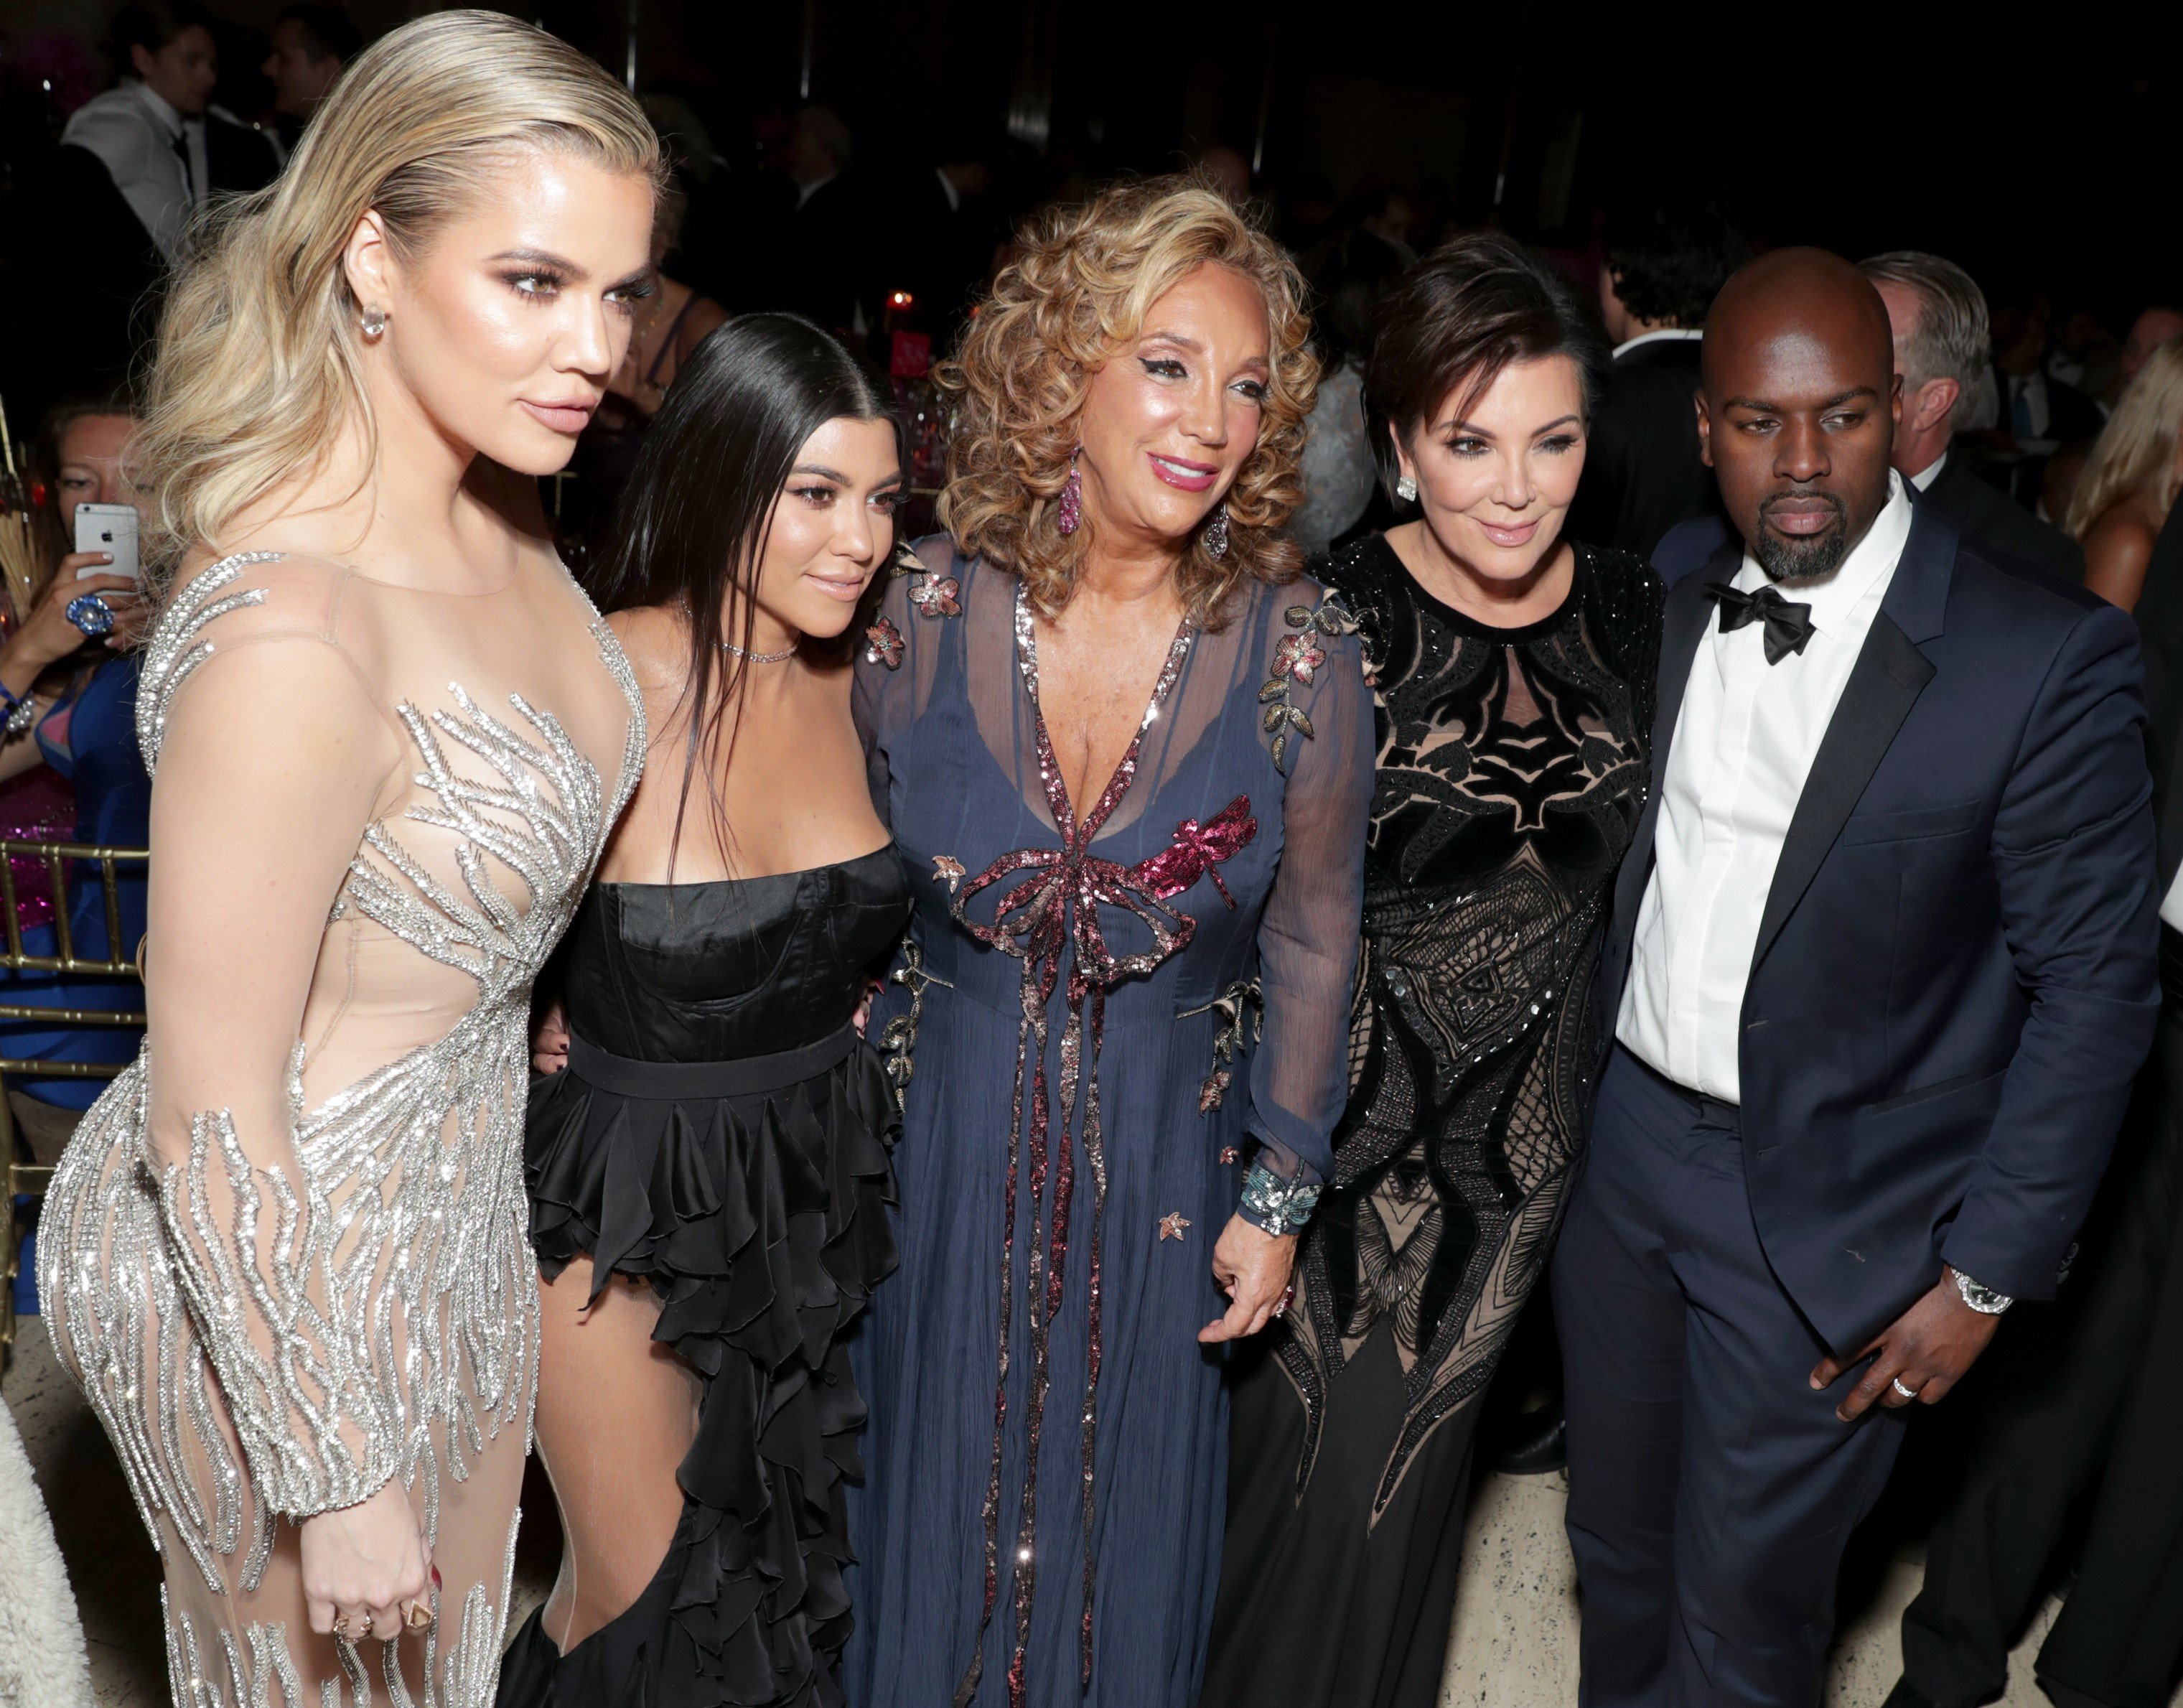 (L-R): Khloe Kardashian, Kourtney Kardashian, Denise Rich, Kris Jenner, and Corey Gamble